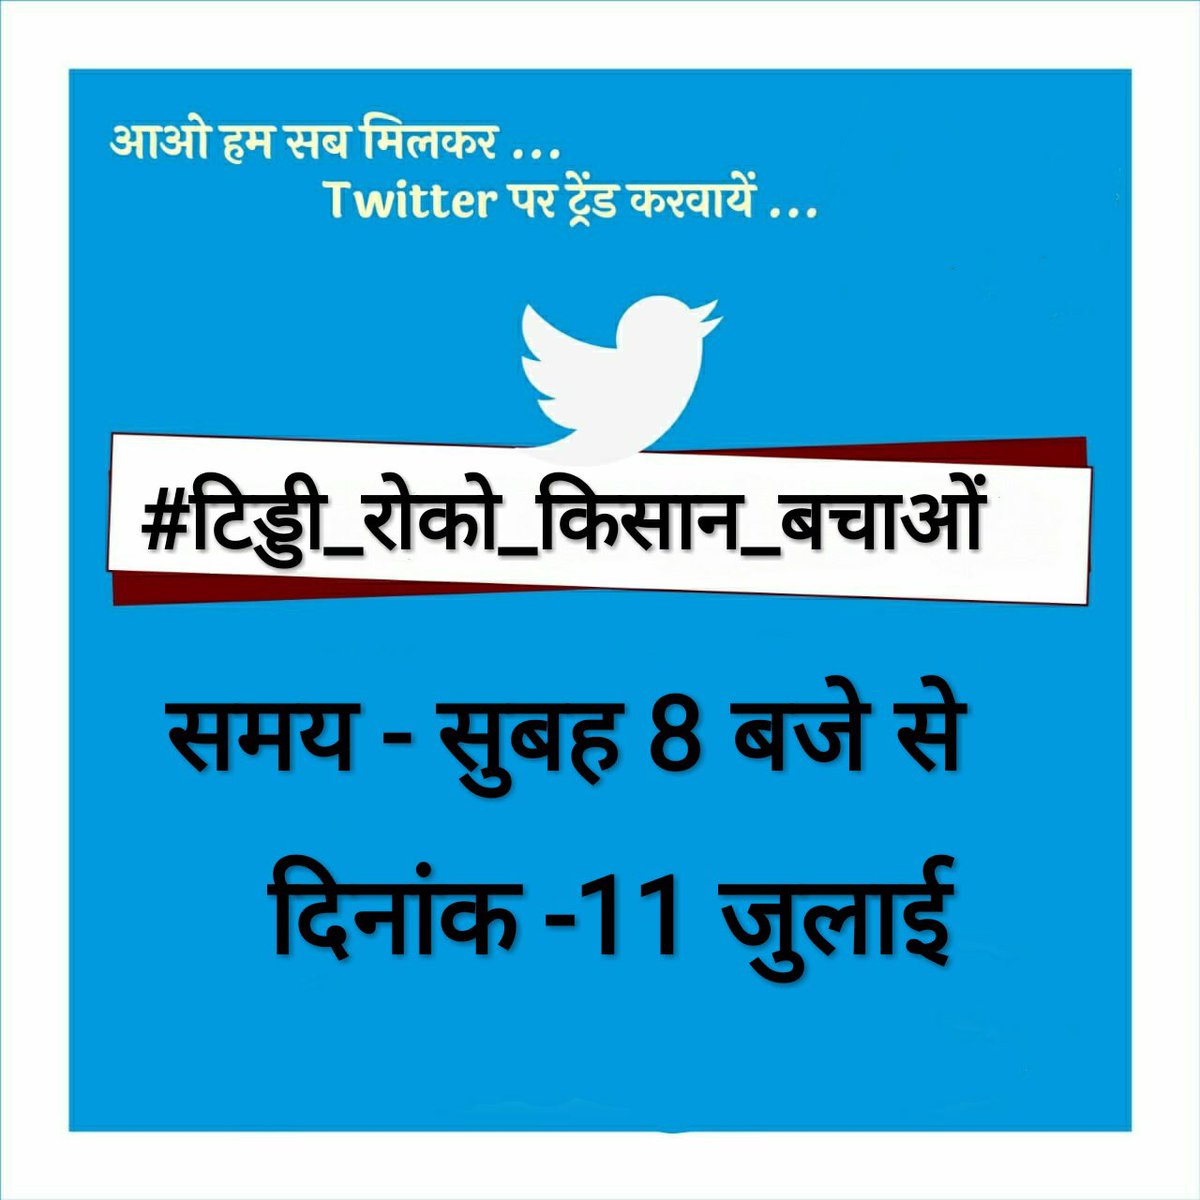 कल सुबह 8 बजे से लगातार बढते टिड्डी हमलों की तरफ सरकार का ध्यान आकर्षित करने के लिए #टिड्डी_रोको_किसान_बचाओ हैशटैग के माध्यम से आवाज बुलंद की जाएगी!
सभी साथी ज्यादा से ज्यादा ट्वीट व रिट्वीट करें! 
@MukhiyaSaroha @SagarMandiya_ @dr_jakhar @TRDogiyal1 @RajeshGiyad_ @girdharlegha2